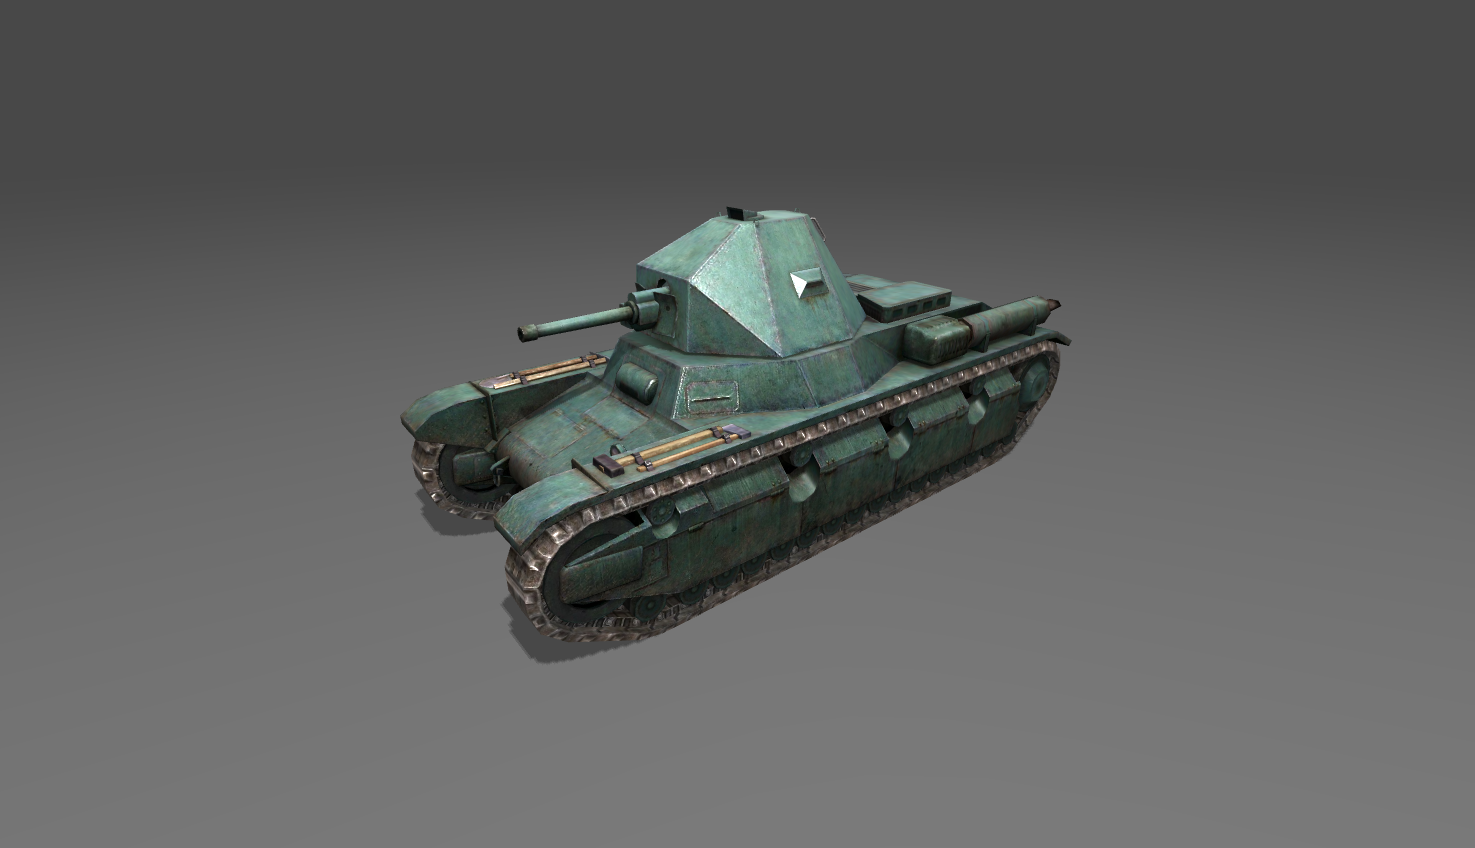 10.4 блиц. AMX 38. Танк АМХ 38. Французские танки AMX 38. Кв 4 вот блиц.